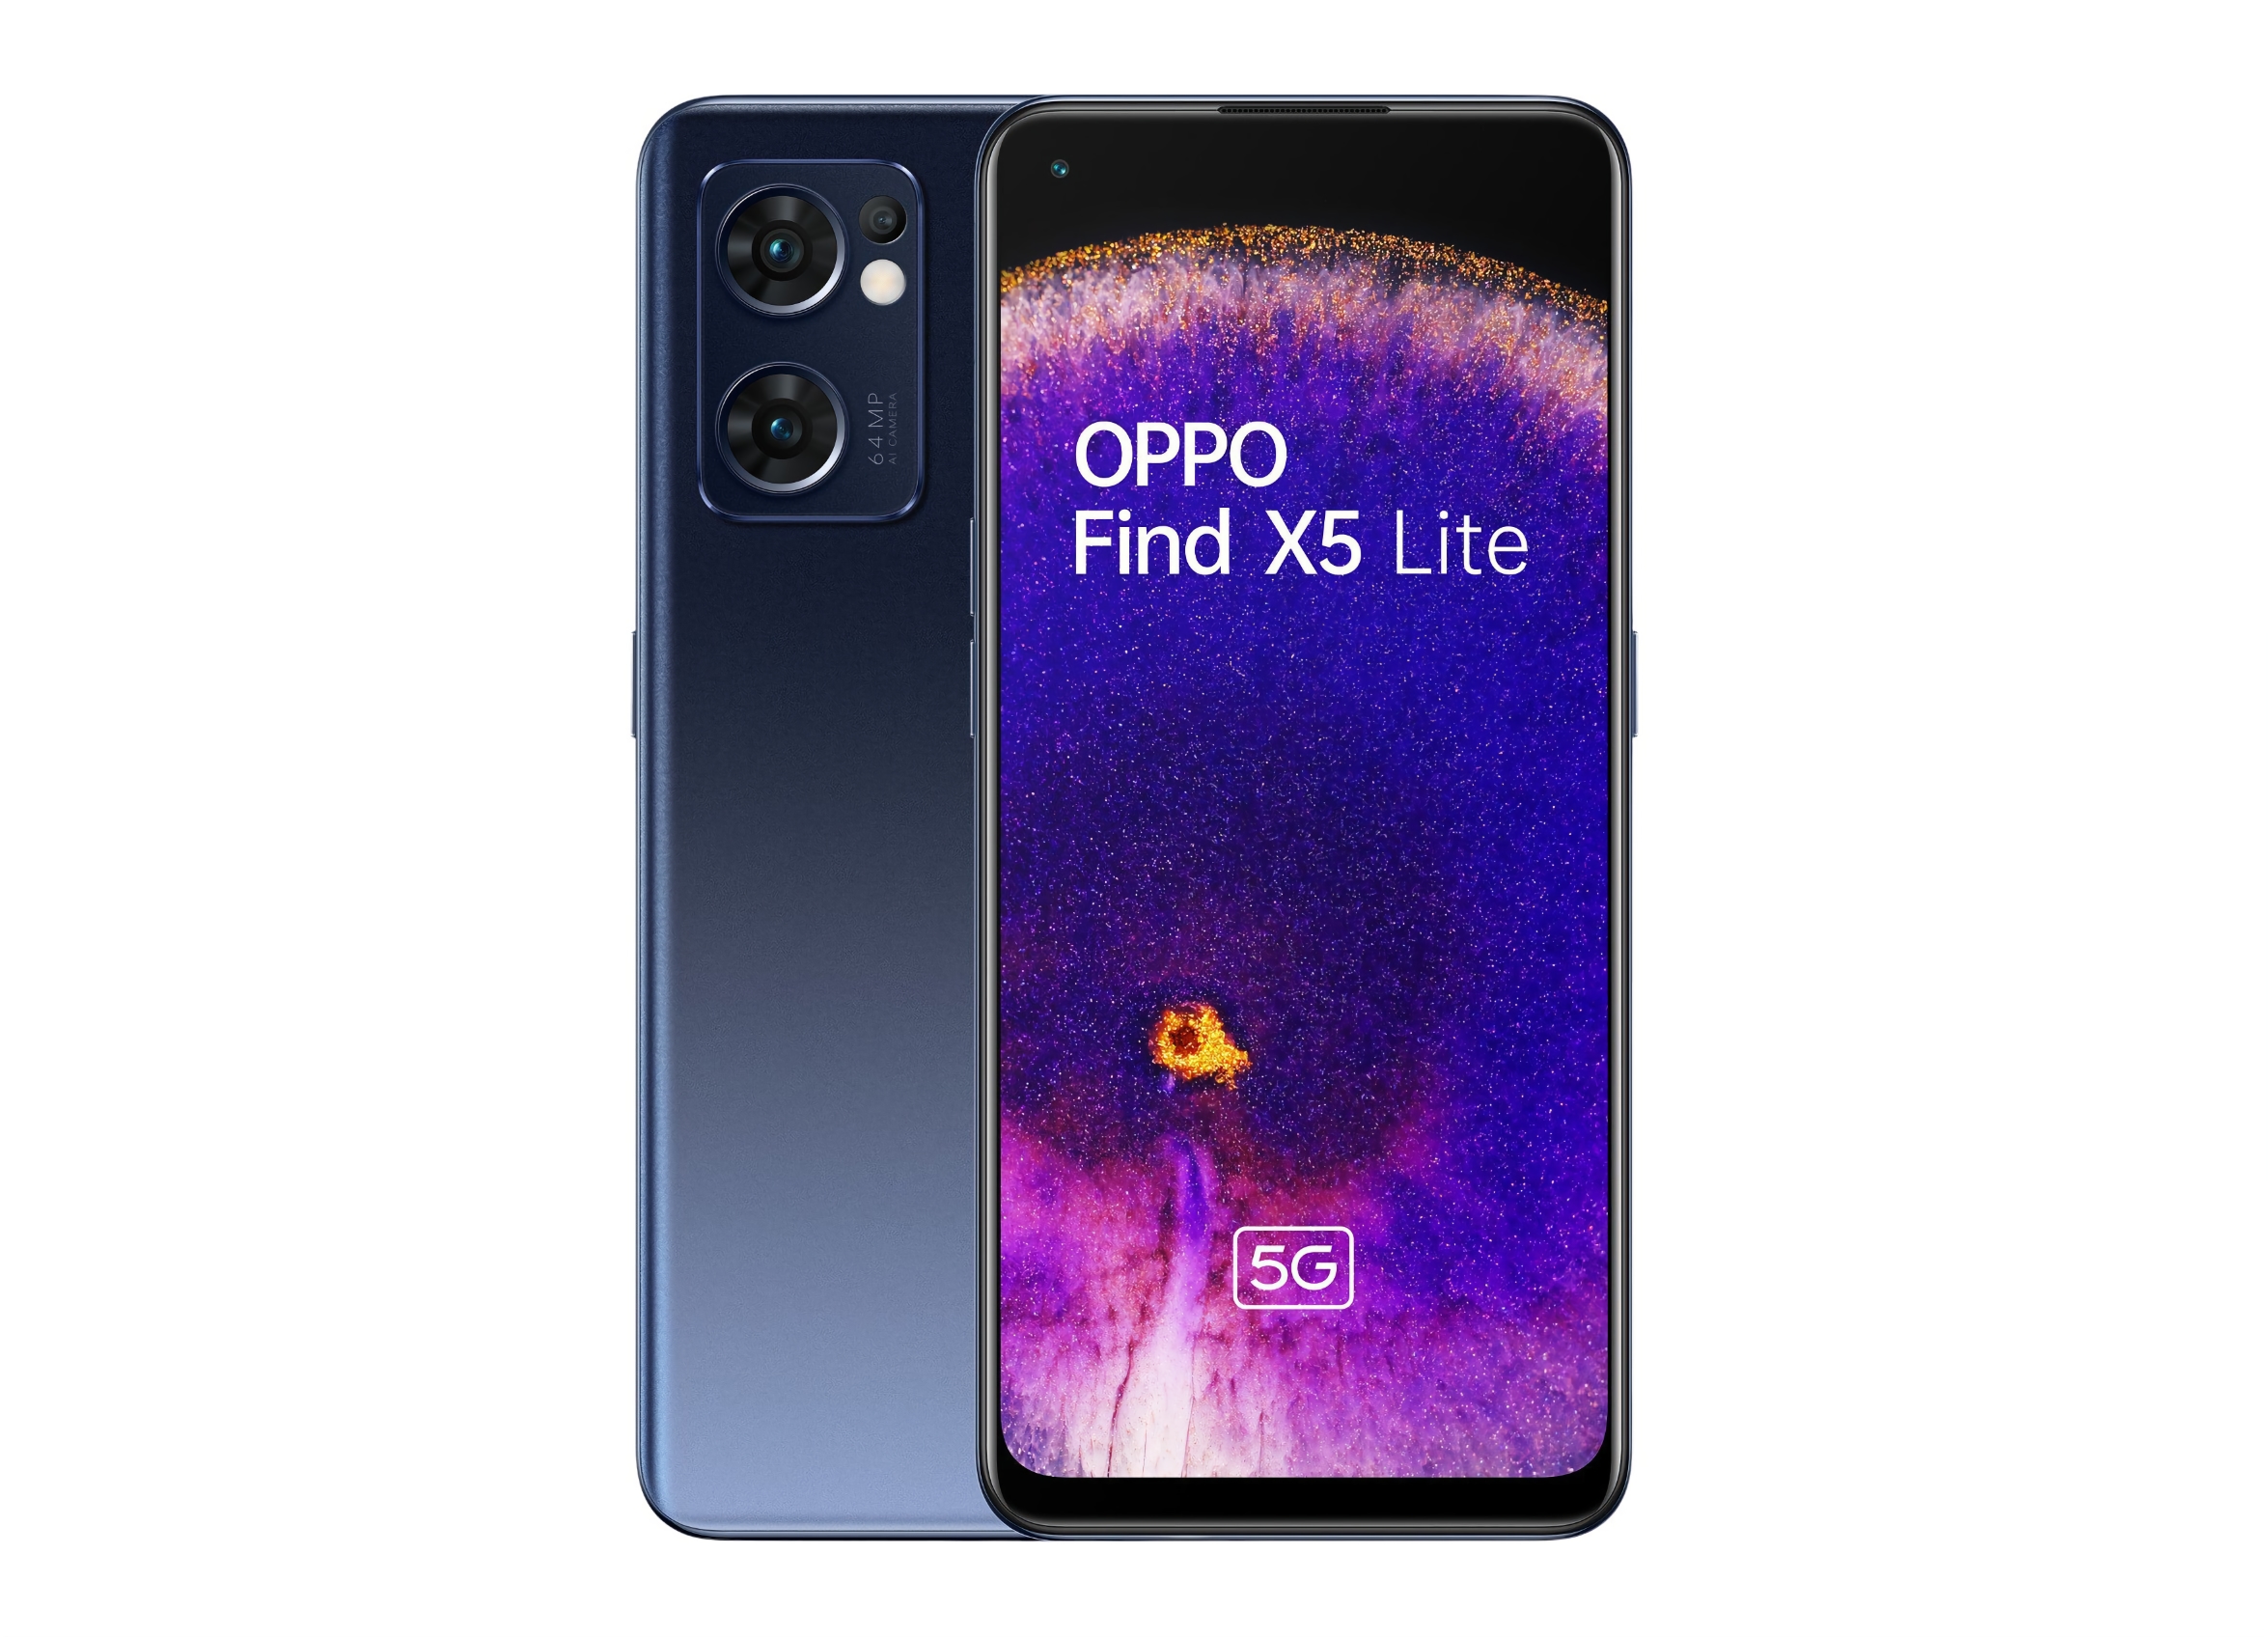 Copia de OPPO Reno 7: información privilegiada revela renders de OPPO Find X5 Lite con pantalla plana, cámara triple y colores duales